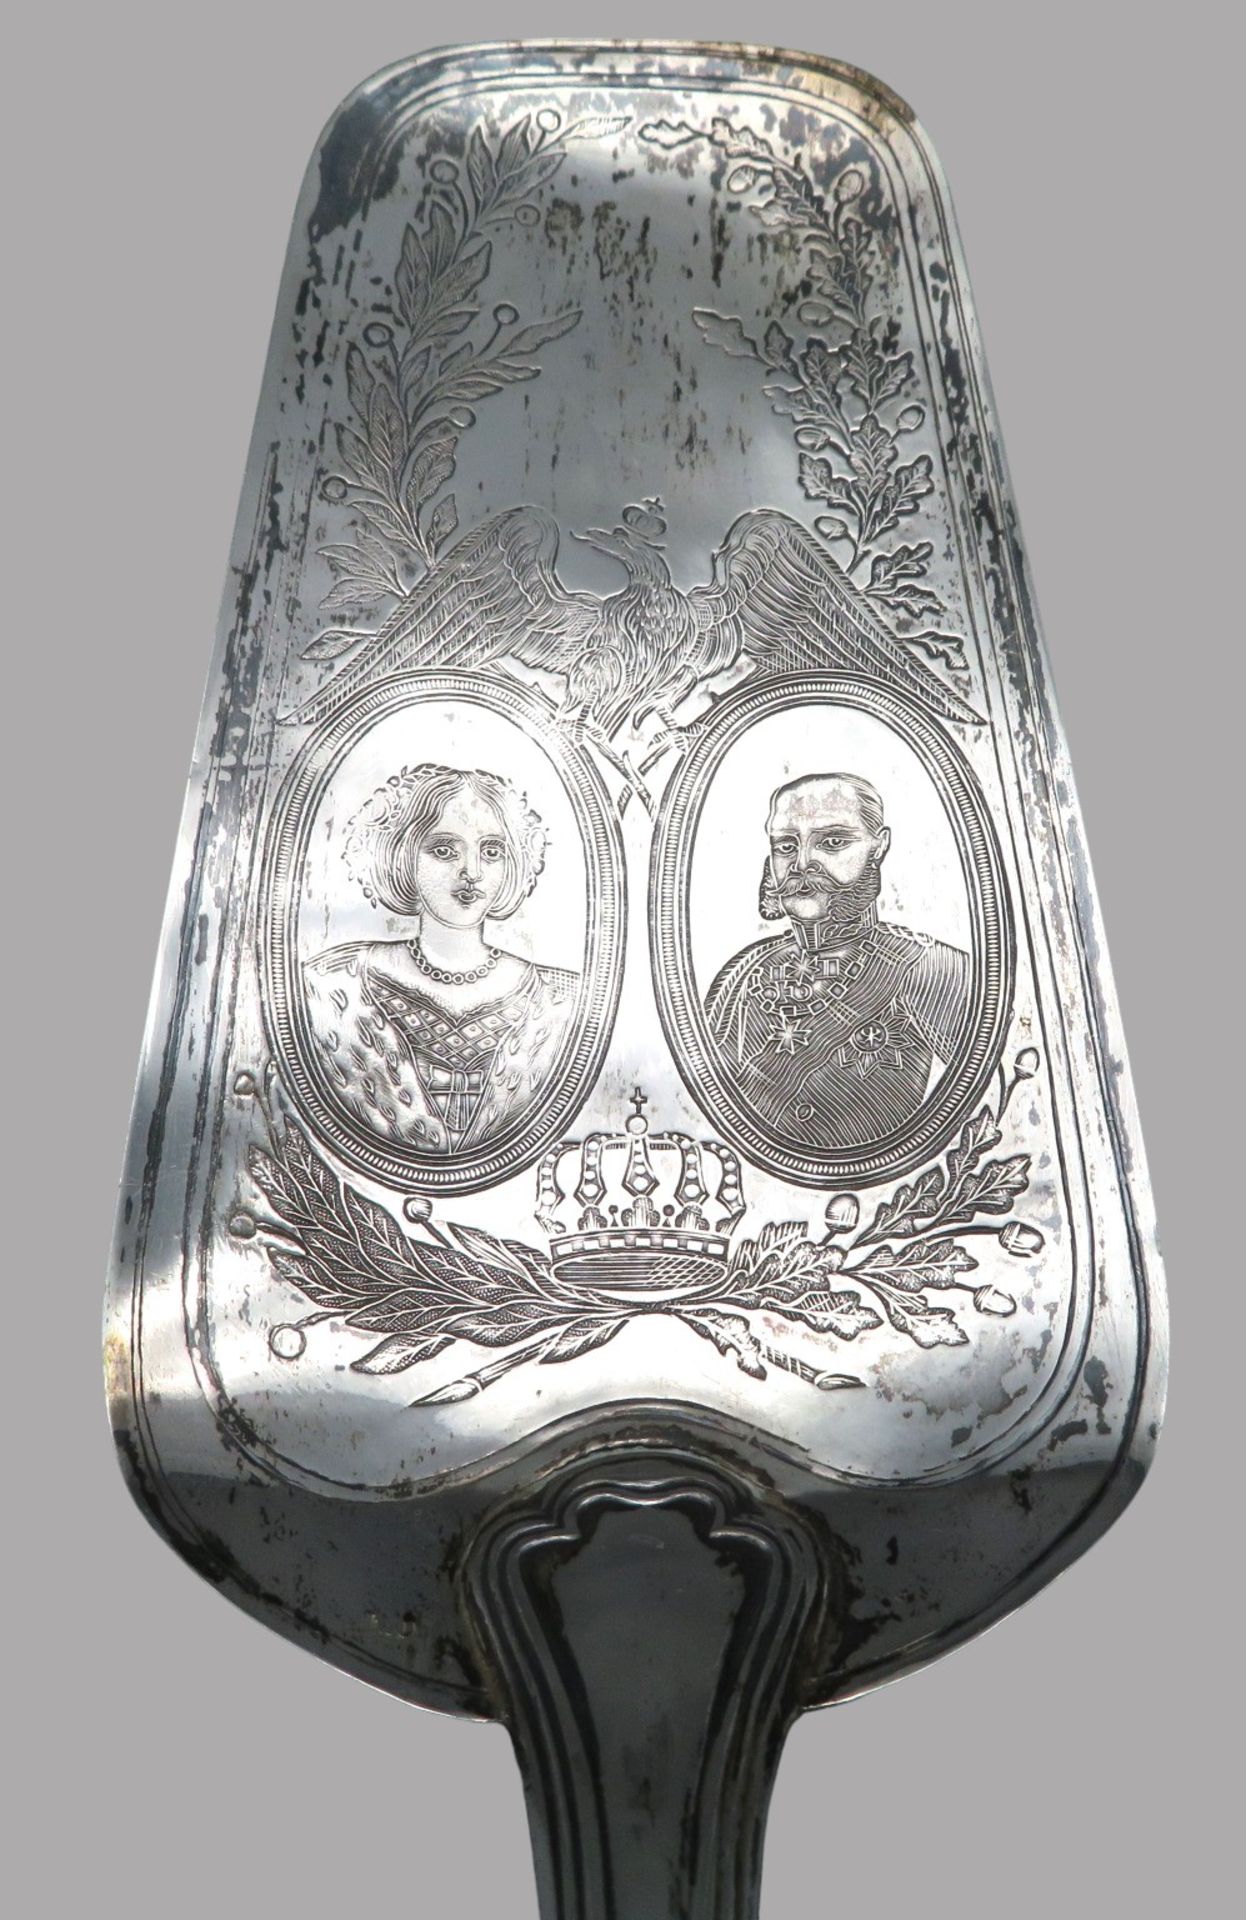 Kuchenschaufel mit Medaillonporträts des Kaiserpaares Franz Joseph I. und Elisabeth (genannt Sissi) - Image 2 of 3